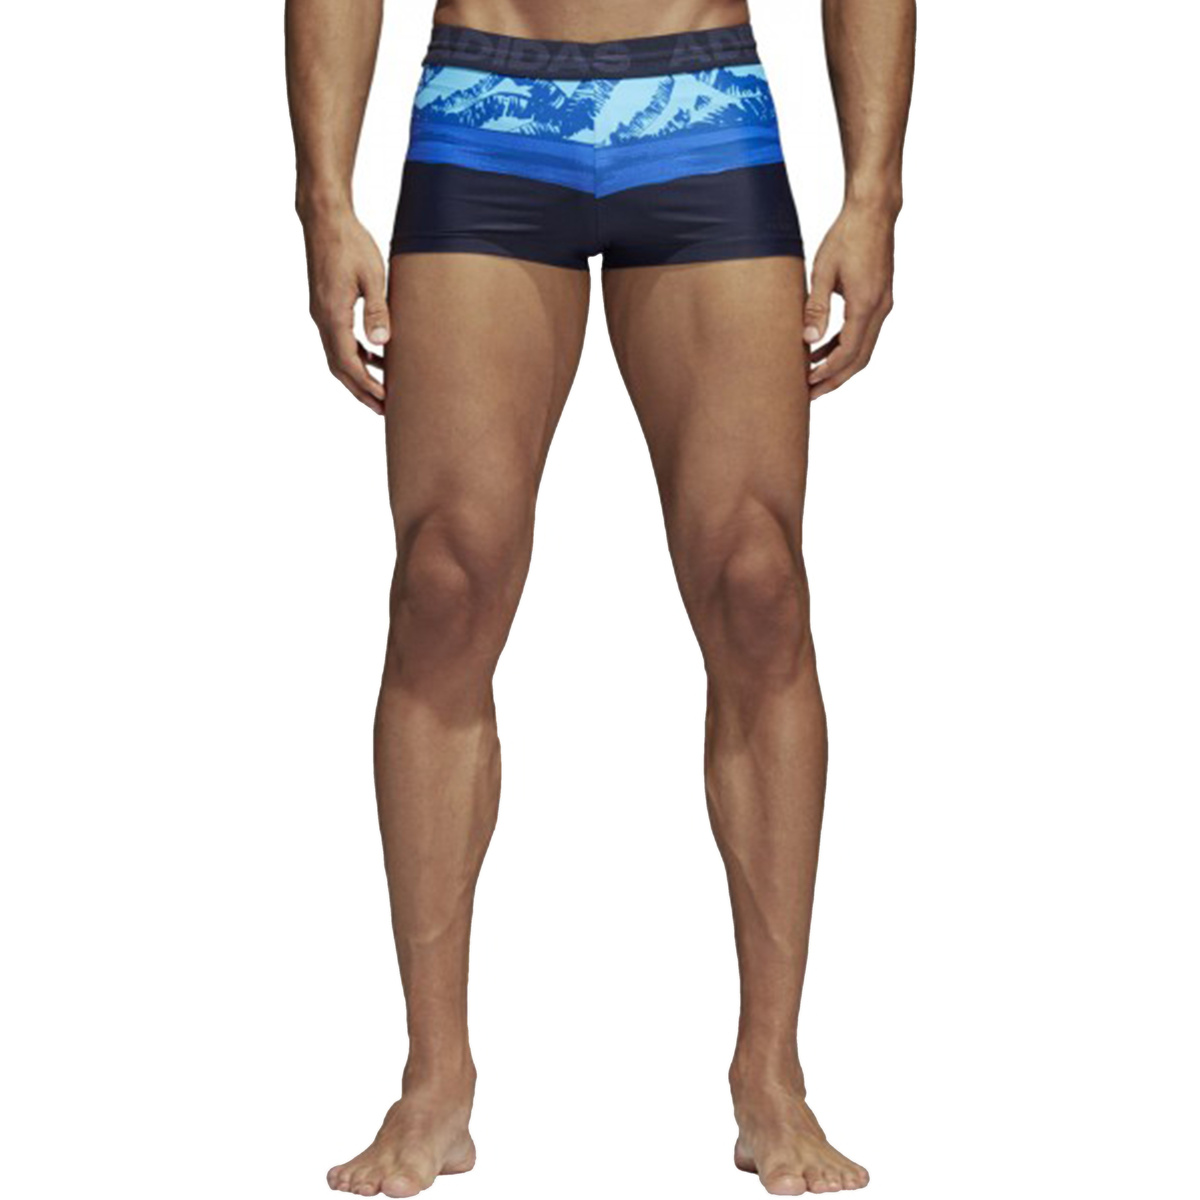 Textil Homem Fatos e shorts de banho adidas Originals CW4831 Azul